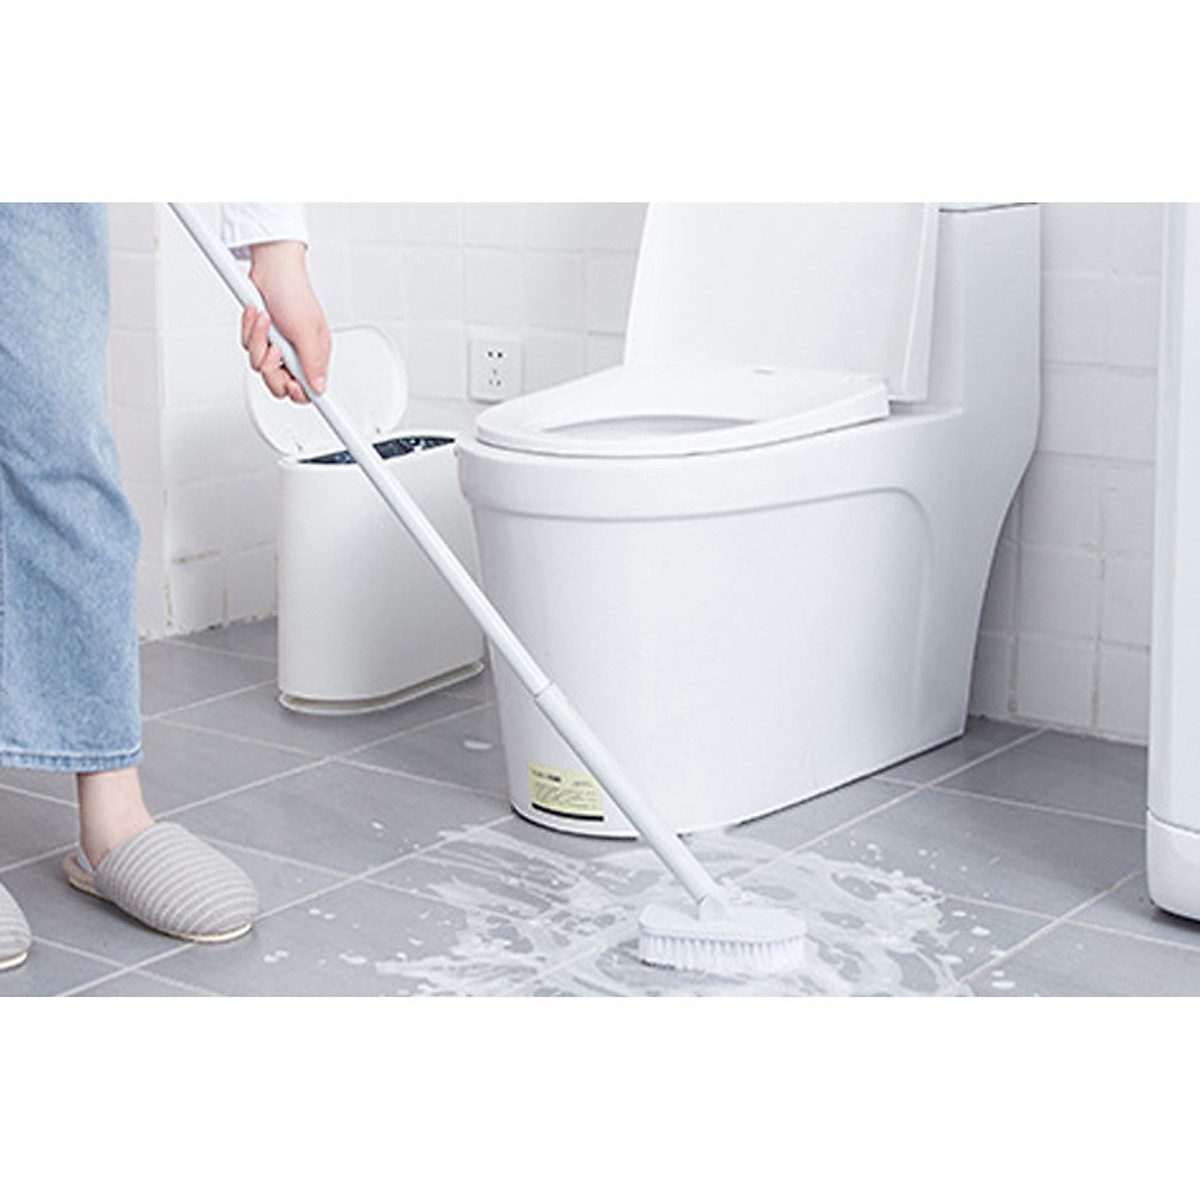 Dụng cụ vệ sinh chất lượng cao giúp bạn dễ dàng làm sạch mọi góc cạnh của nhà. Với các loại sản phẩm chuyên dụng, bạn có thể tiết kiệm thời gian và công sức trong việc làm sạch và giữ gìn vệ sinh nhà cửa. Hãy trải nghiệm sự tiện lợi và hiệu quả của dụng cụ vệ sinh ngay hôm nay!